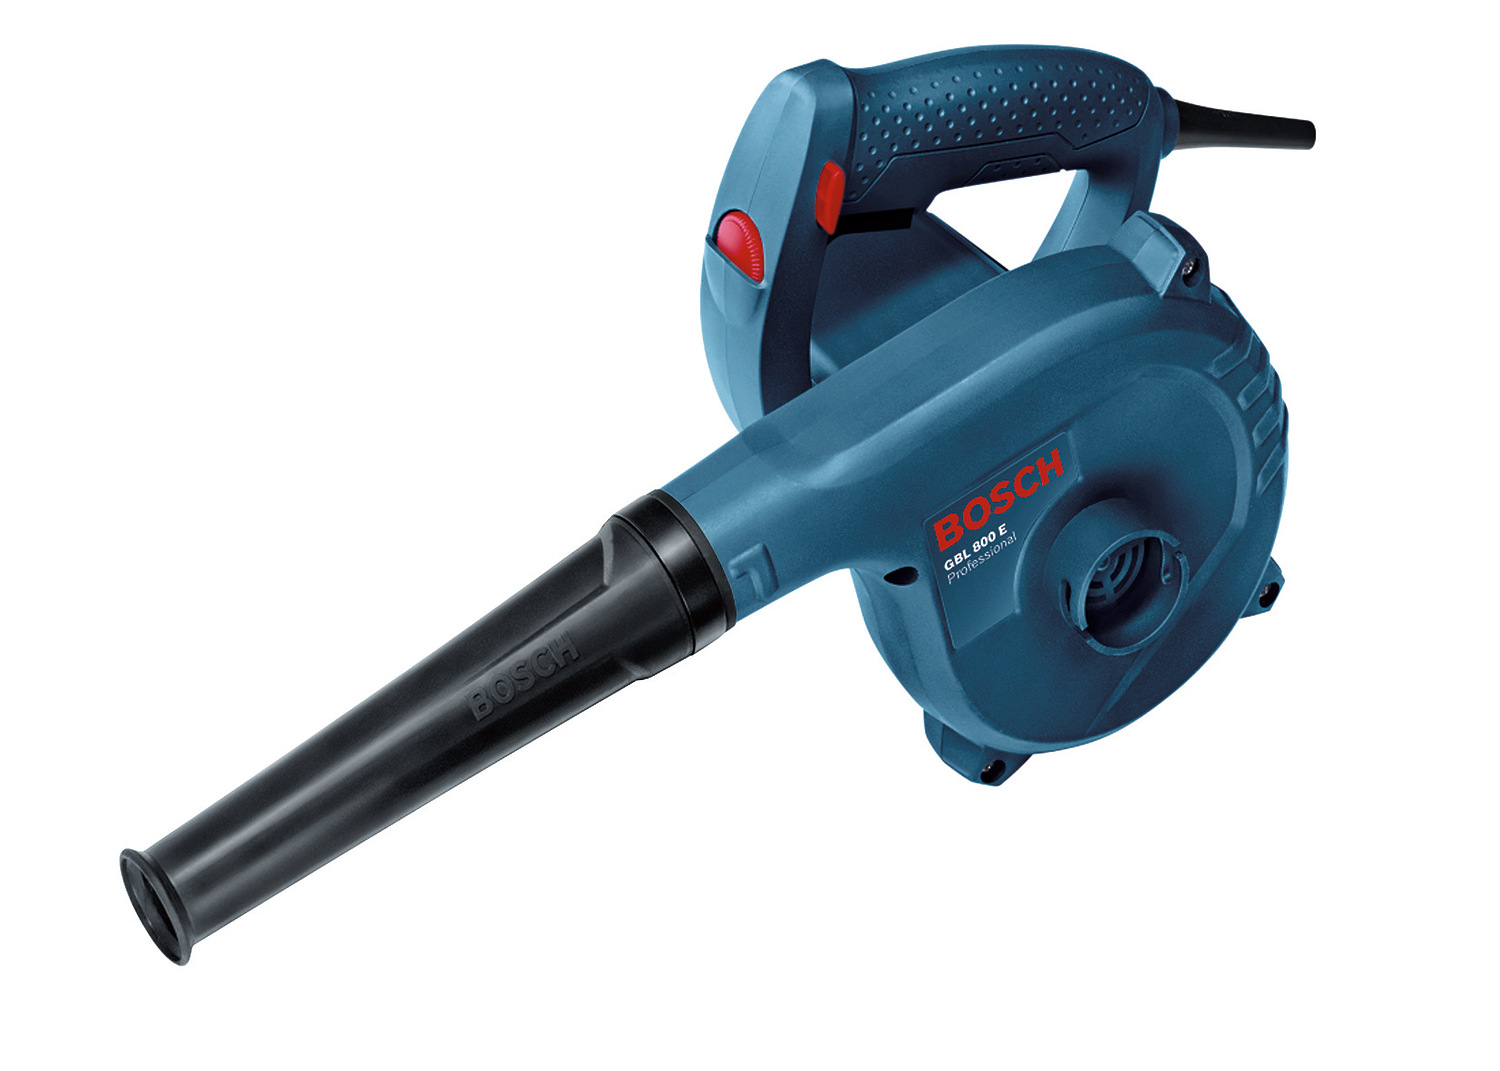 Bosch Professional Blower, 820 Watt, Blue/Black, GBL 800 E